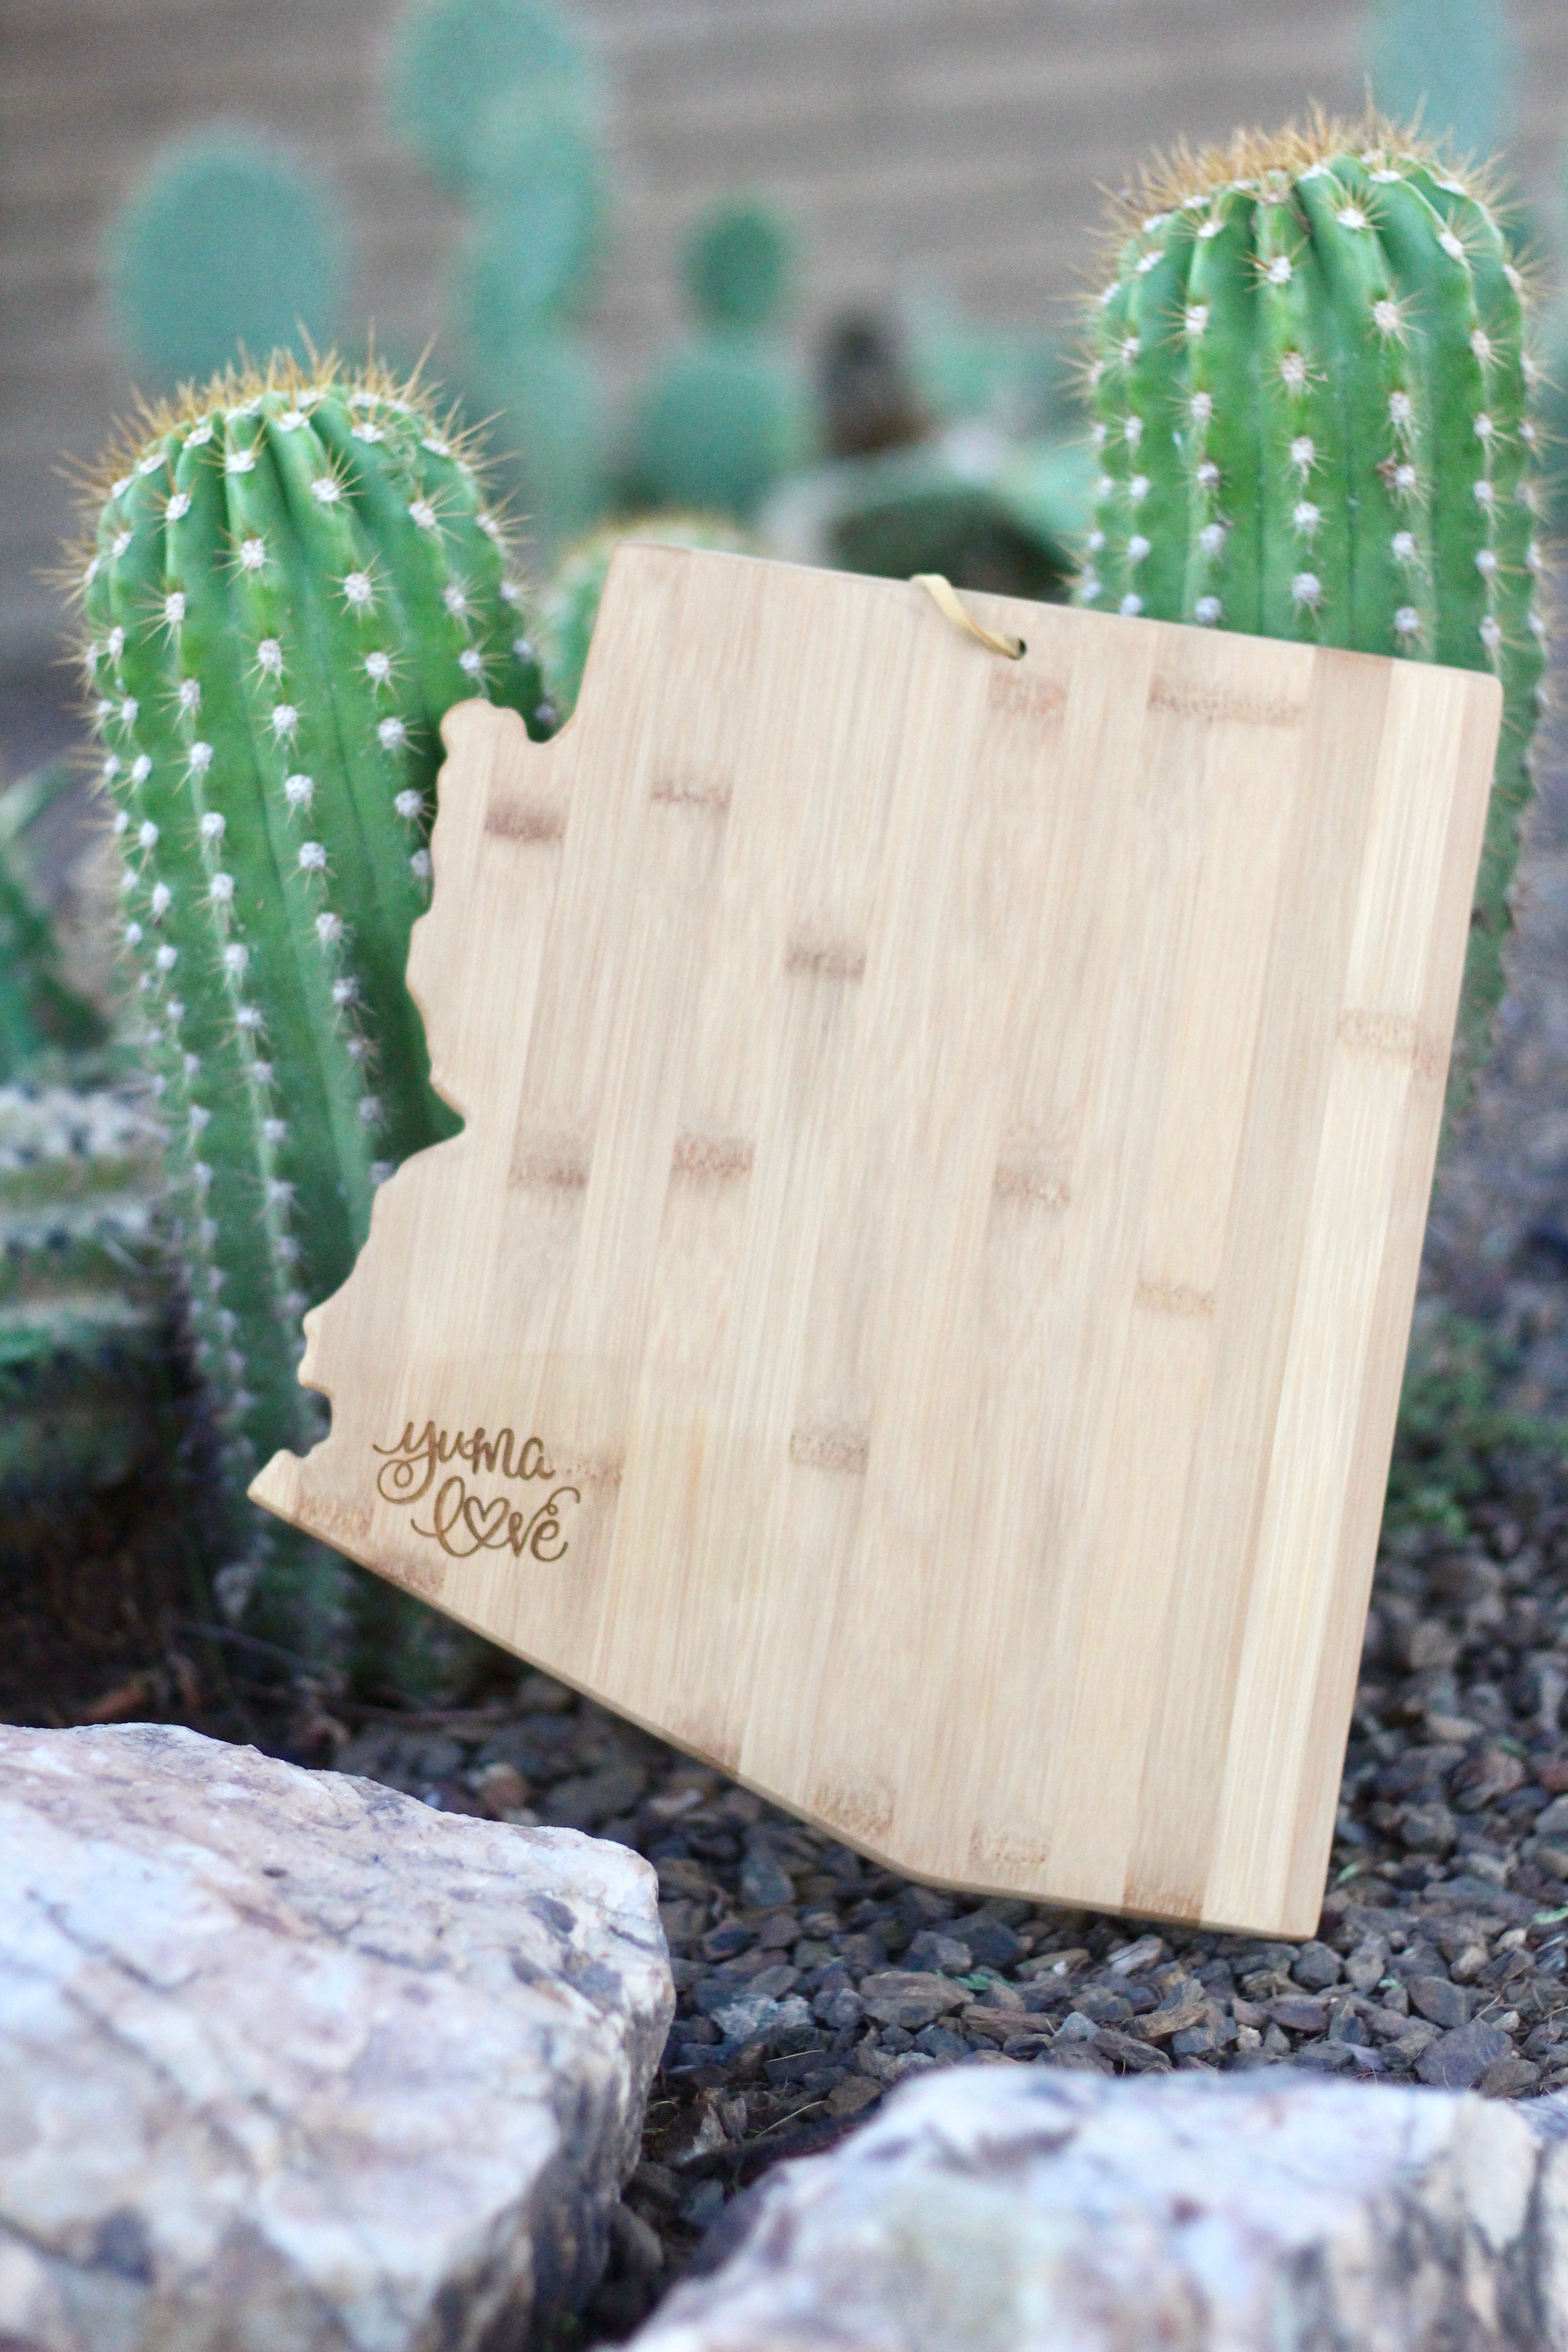 Arizona "Yuma Love" Cutting Board